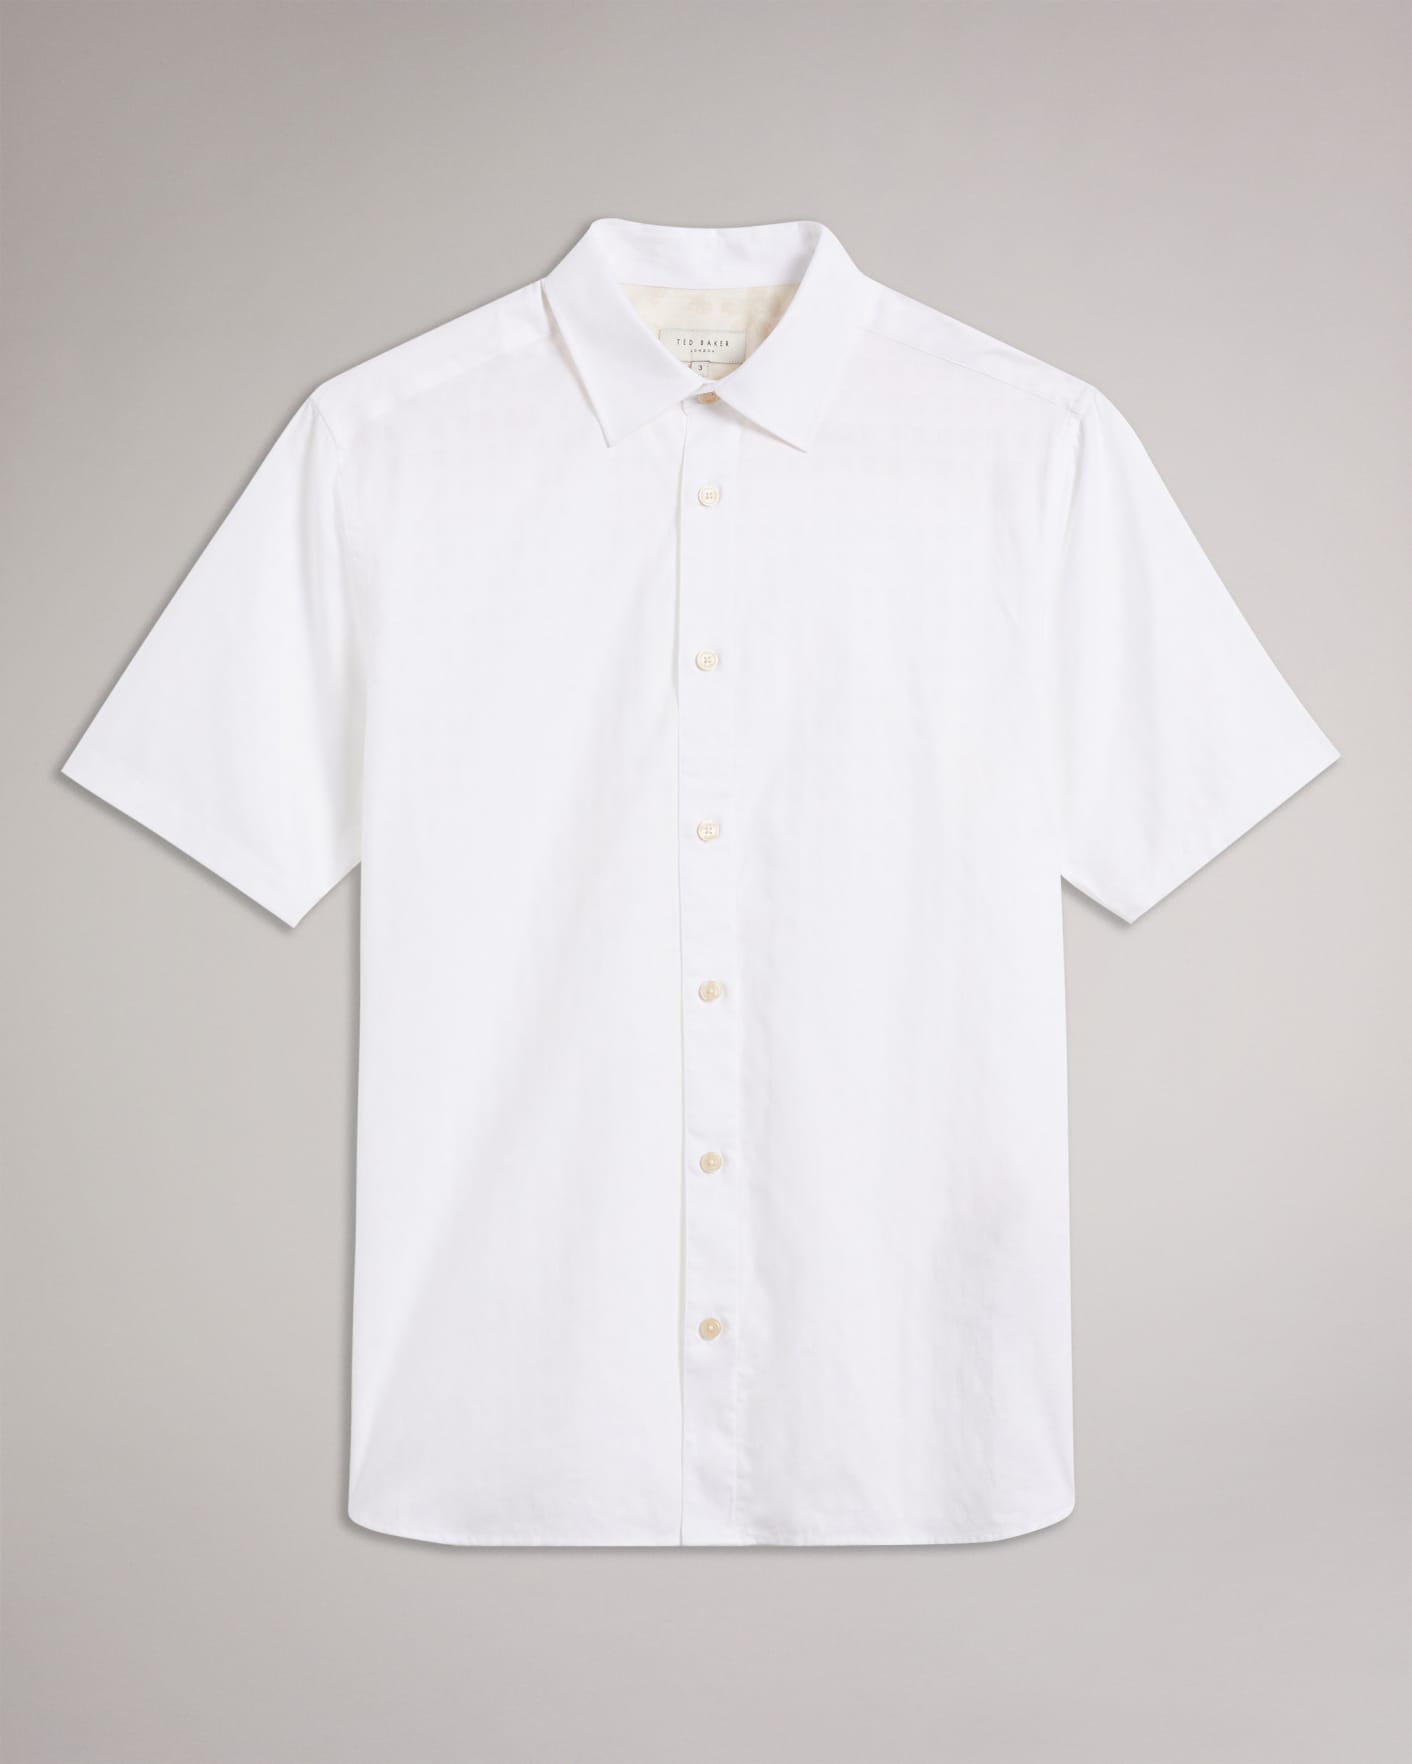 Ted Baker Hutspa Diamond Dot Regular Fit Button-Down Shirt